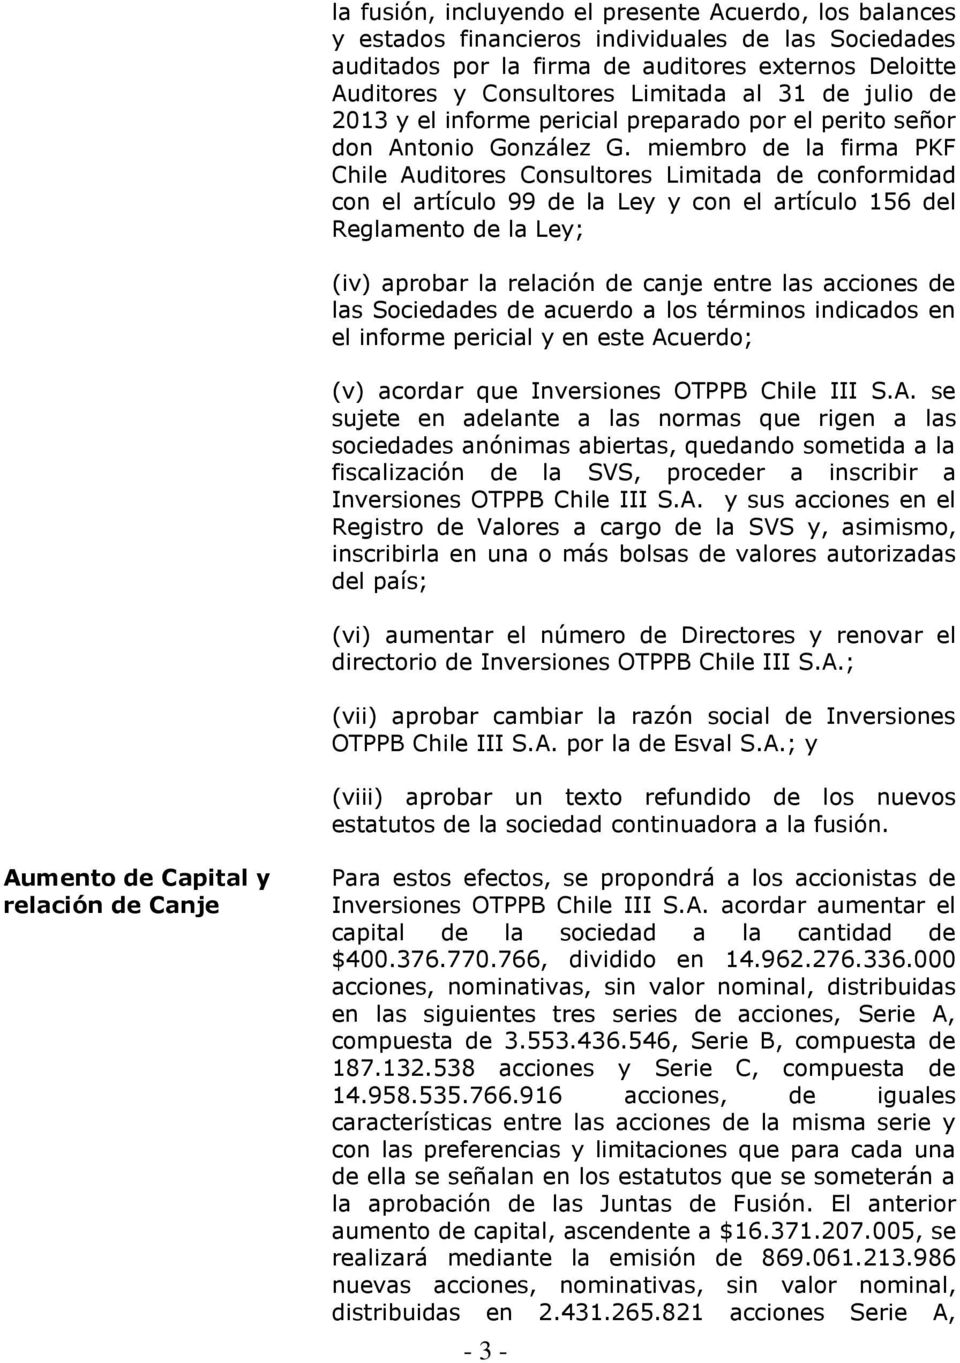 miembro de la firma PKF Chile Auditores Consultores Limitada de conformidad con el artículo 99 de la Ley y con el artículo 156 del Reglamento de la Ley; (iv) aprobar la relación de canje entre las